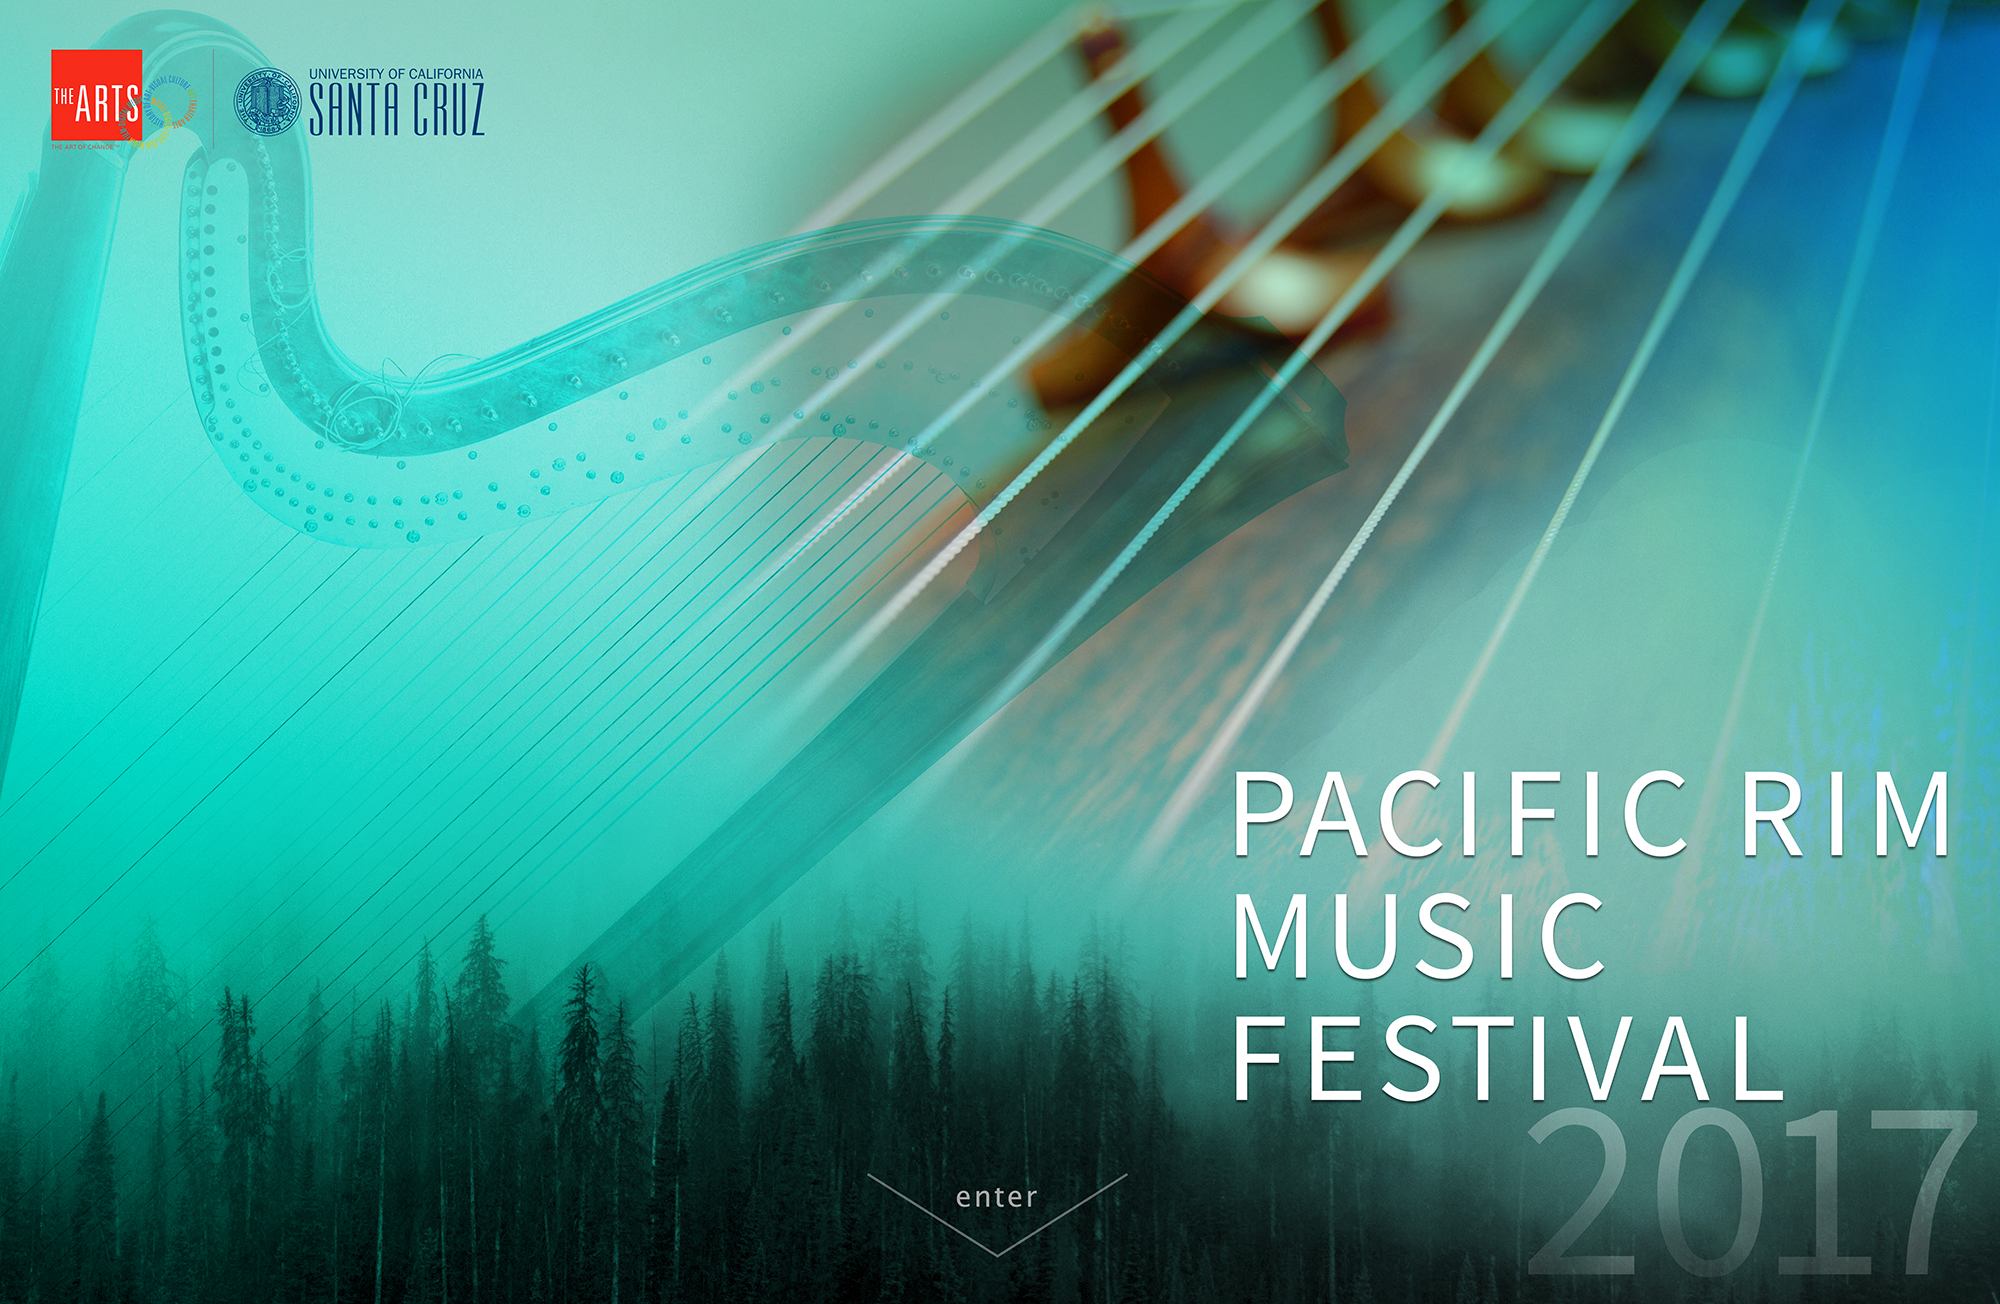 Pacific Rim Music Festival 2017, UC Santa Cruz, Arts Division